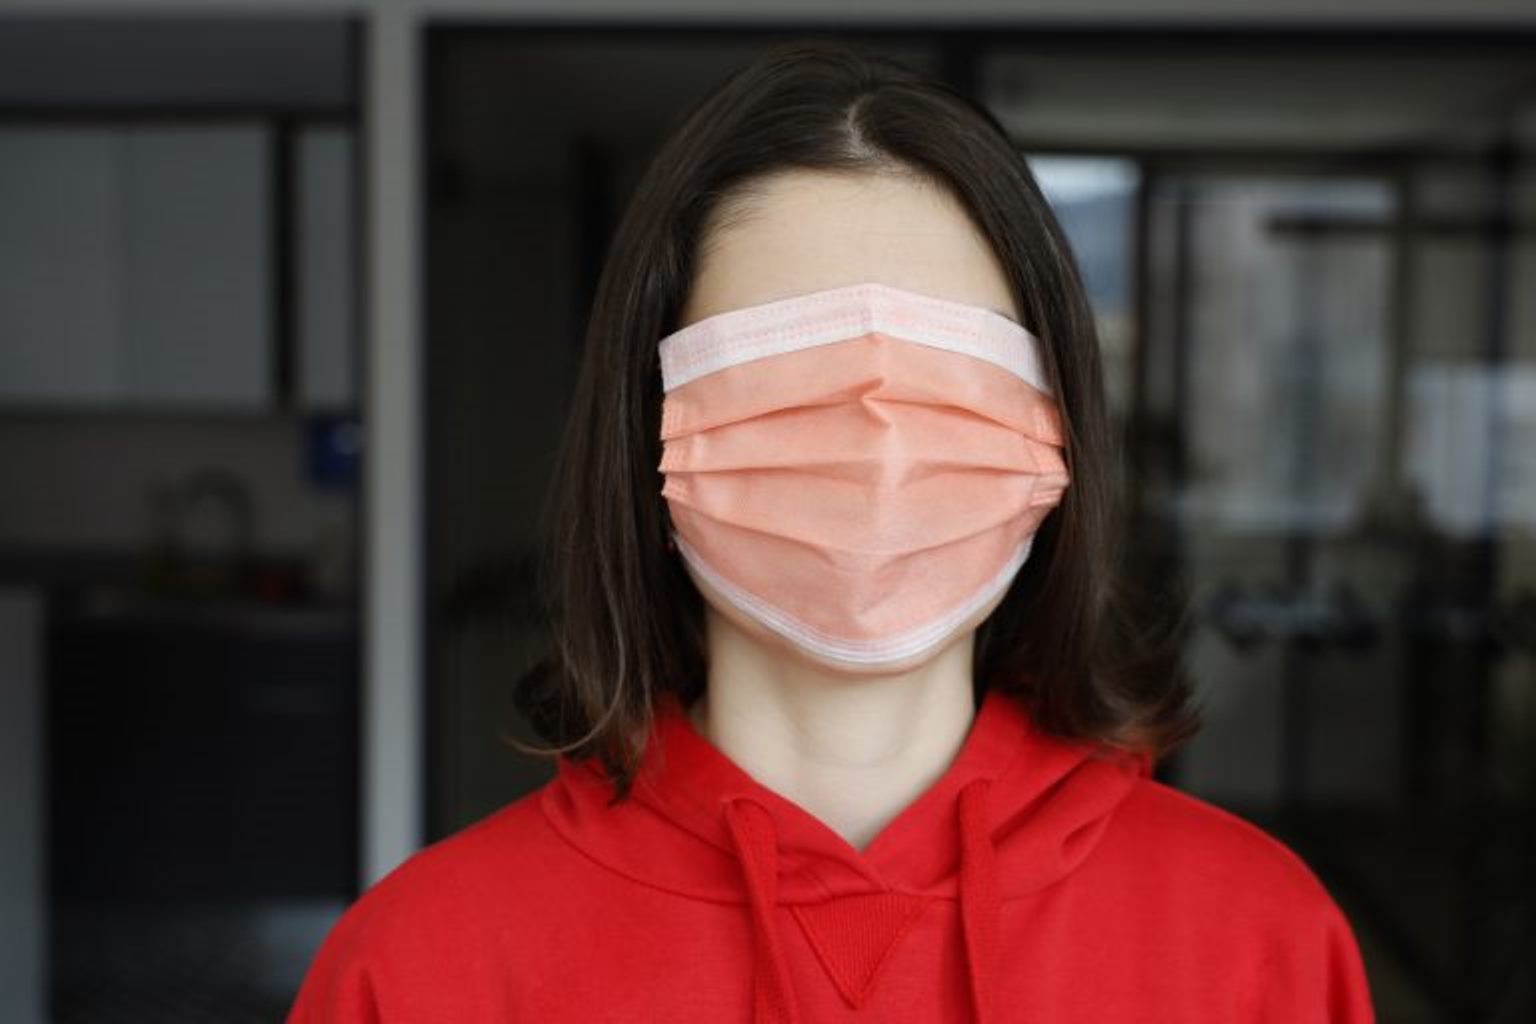 Una mujer que se ha puesto mal la mascarilla cree que el coronavirus la ha dejado ciega (Sátira)